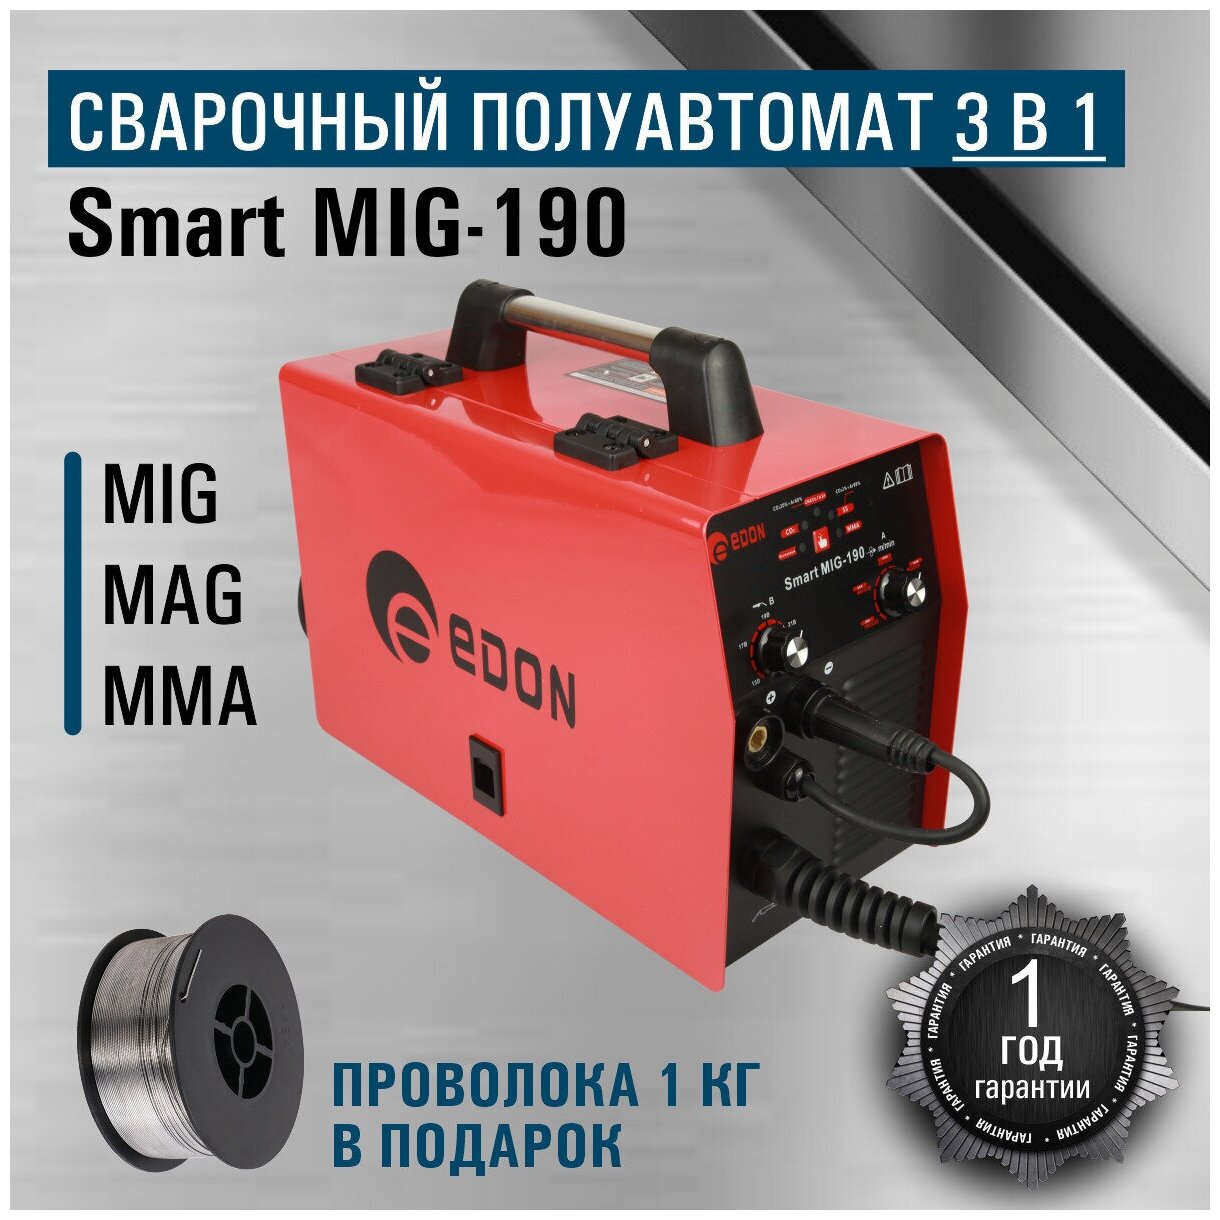 Сварочный аппарат полуавтомат Edon Smart MIG-190/сварка инвертор 3в1/MIG MAG MMA/ подарок отцу/мужу